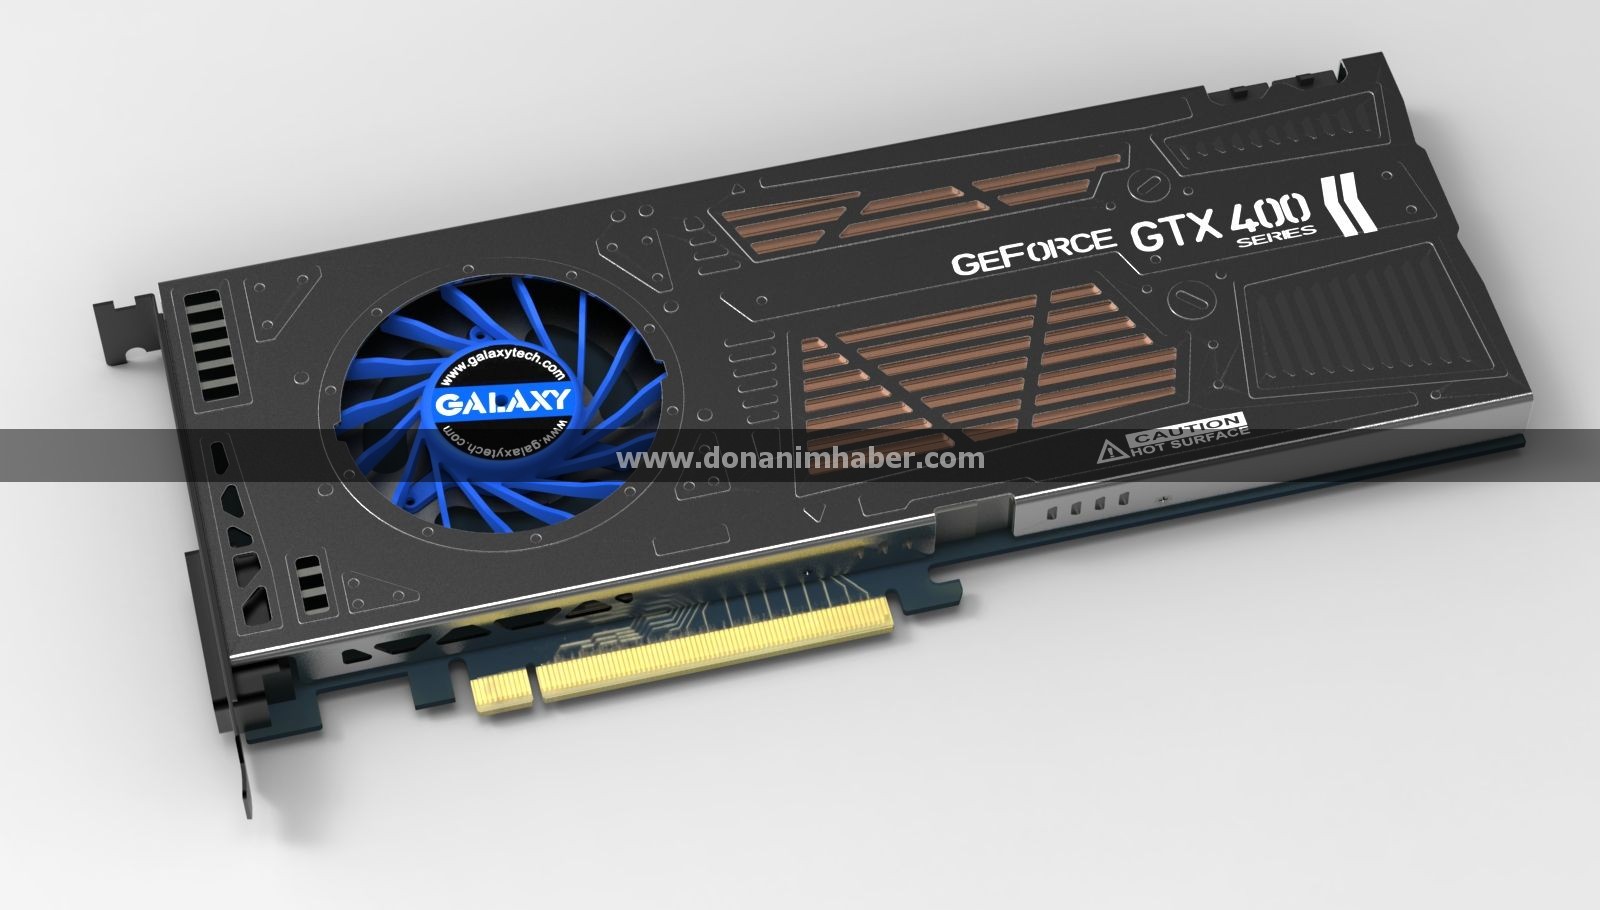 Immagine pubblicata in relazione al seguente contenuto: Galaxy realizza una GeForce GTX 460 con cooler single-slot | Nome immagine: news14173_1.jpg